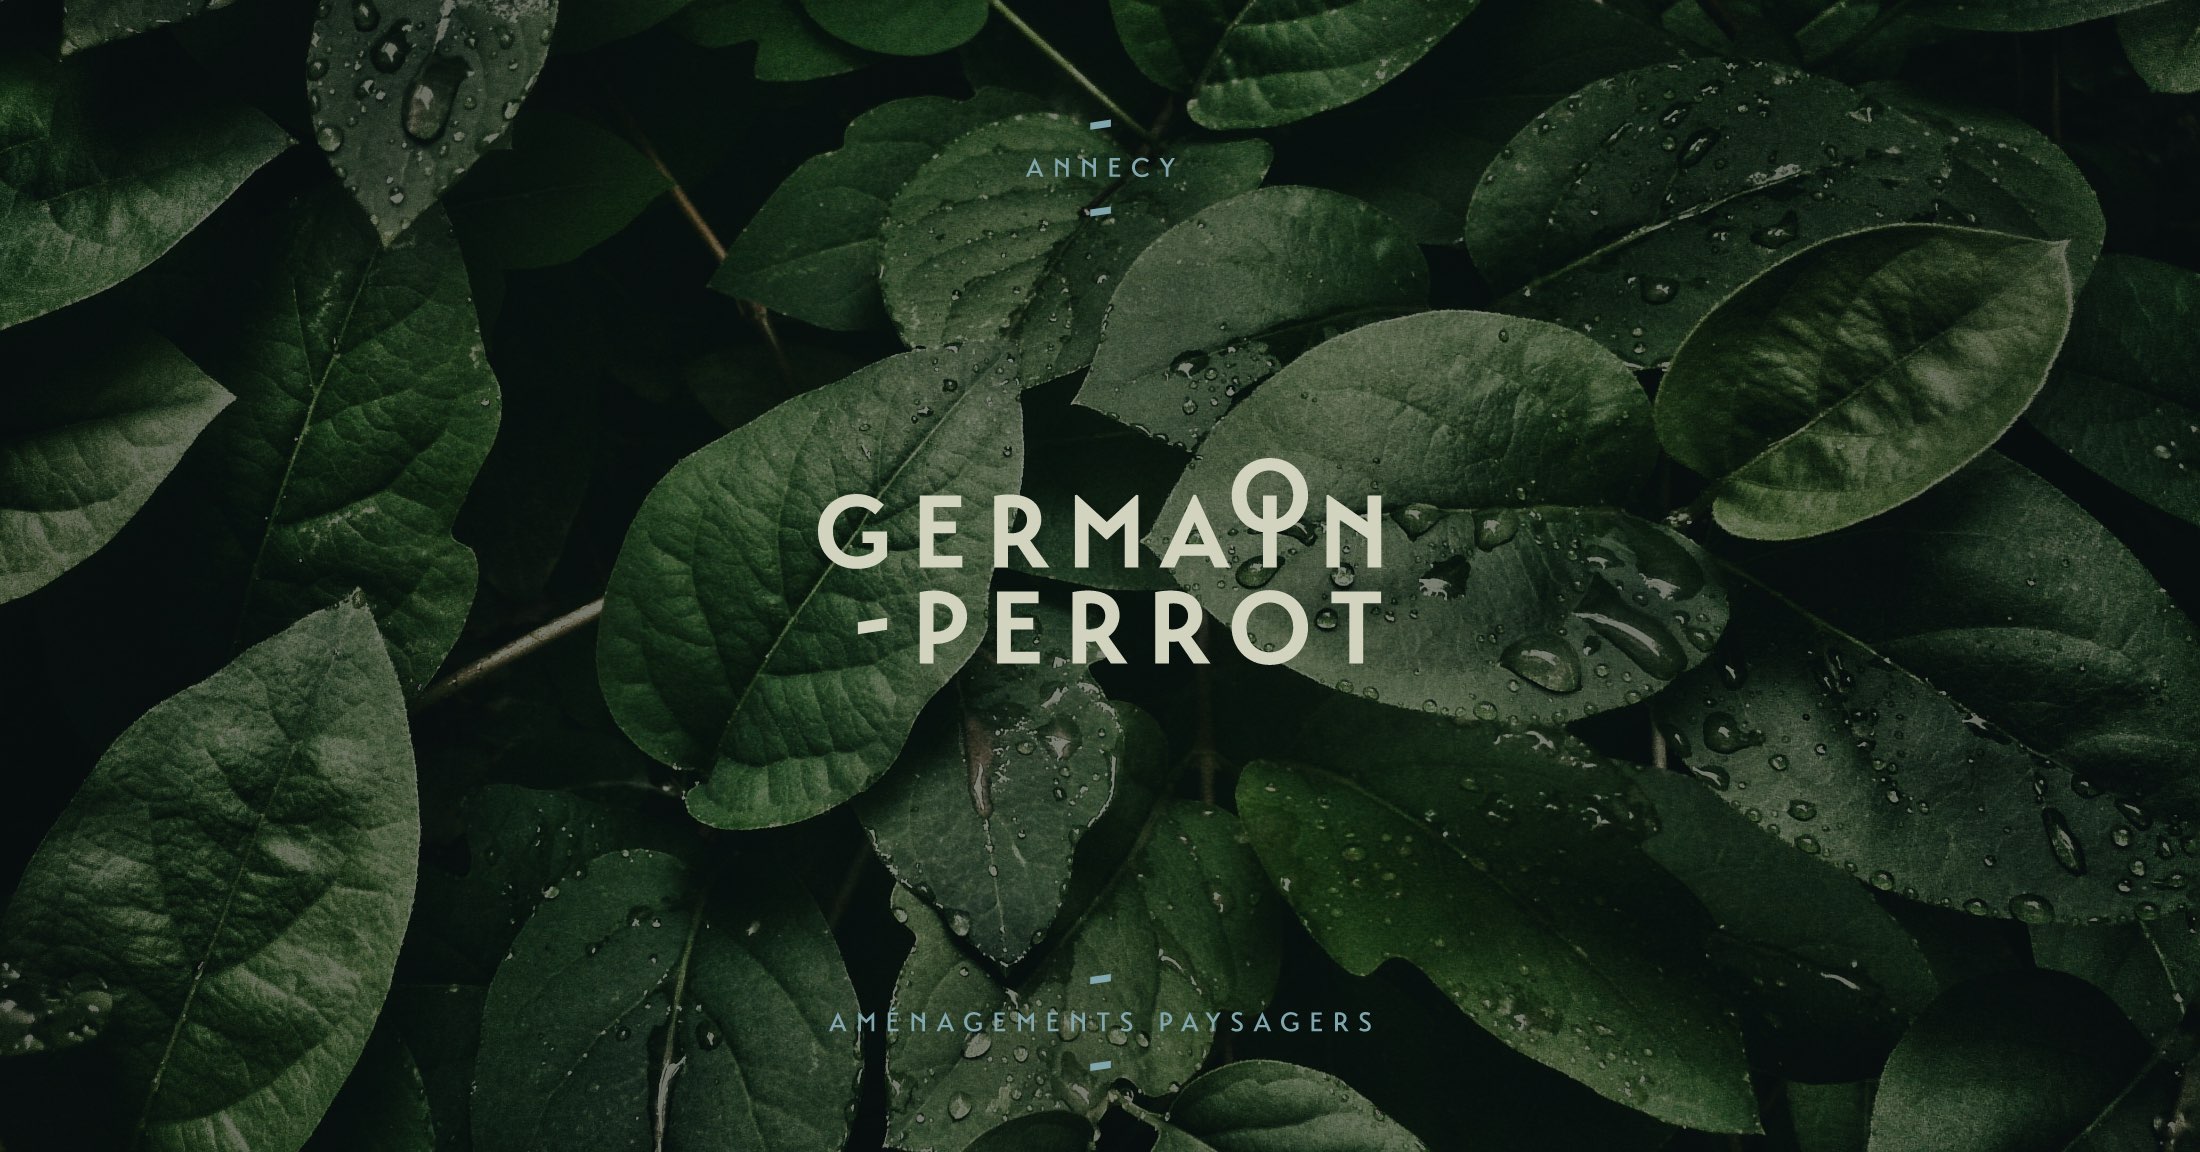 Germain Perrot